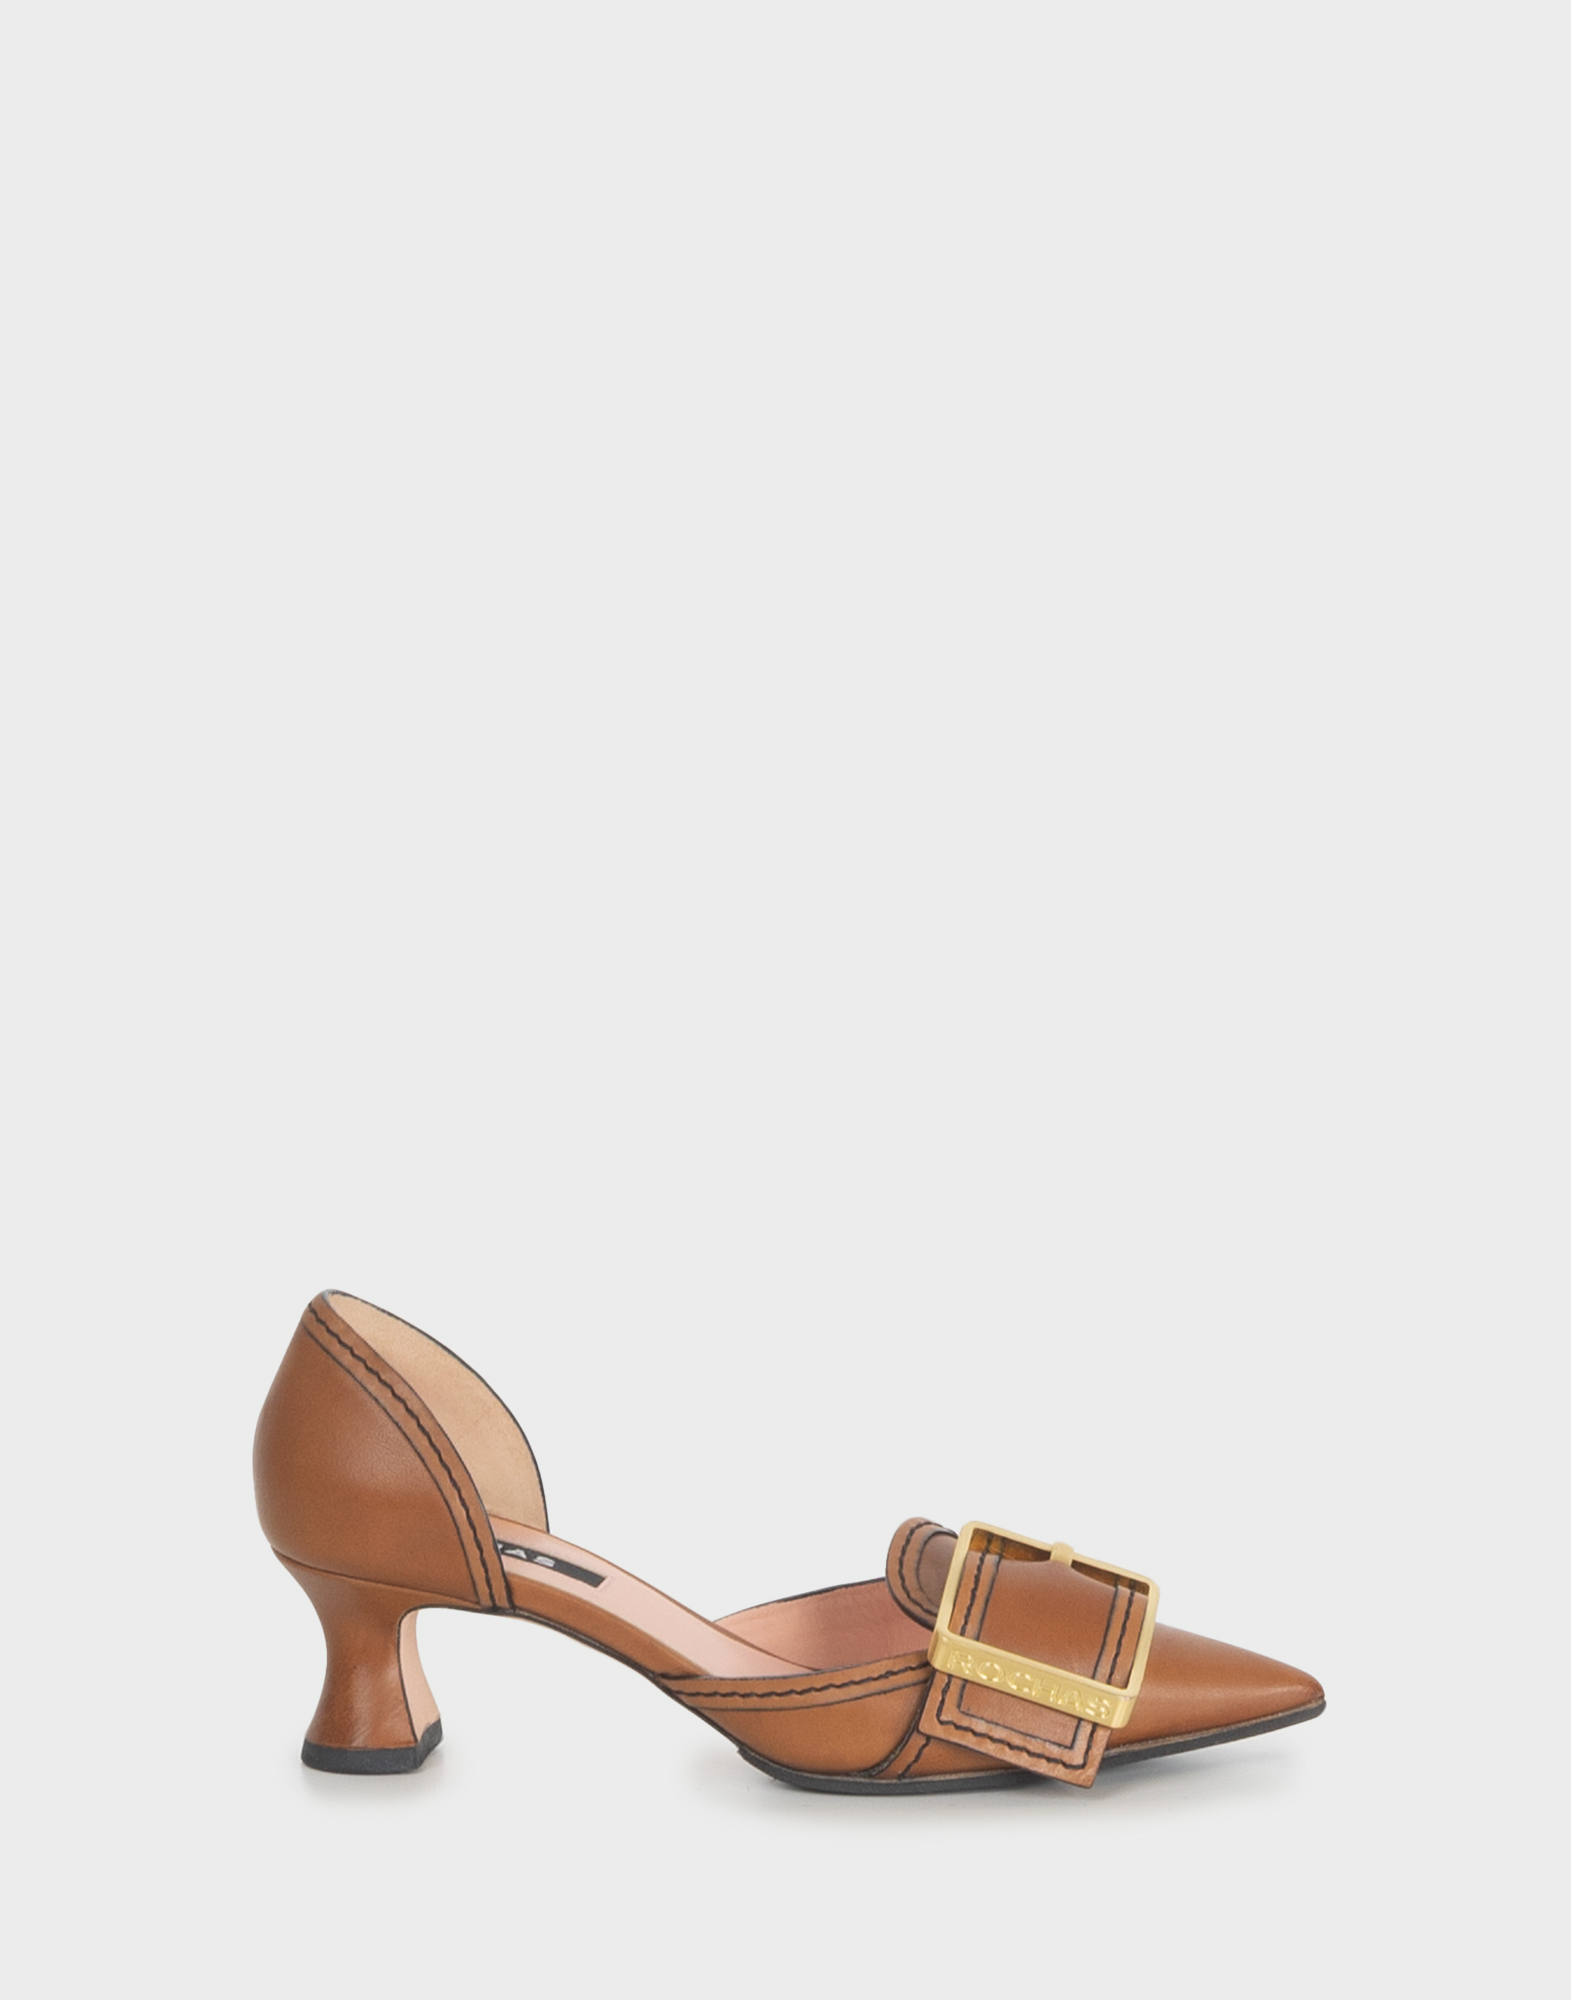 scarpe con tacco basse in pelle marrone con punta, fibbia dorata sul collo del piede, impunture nere a contrasto